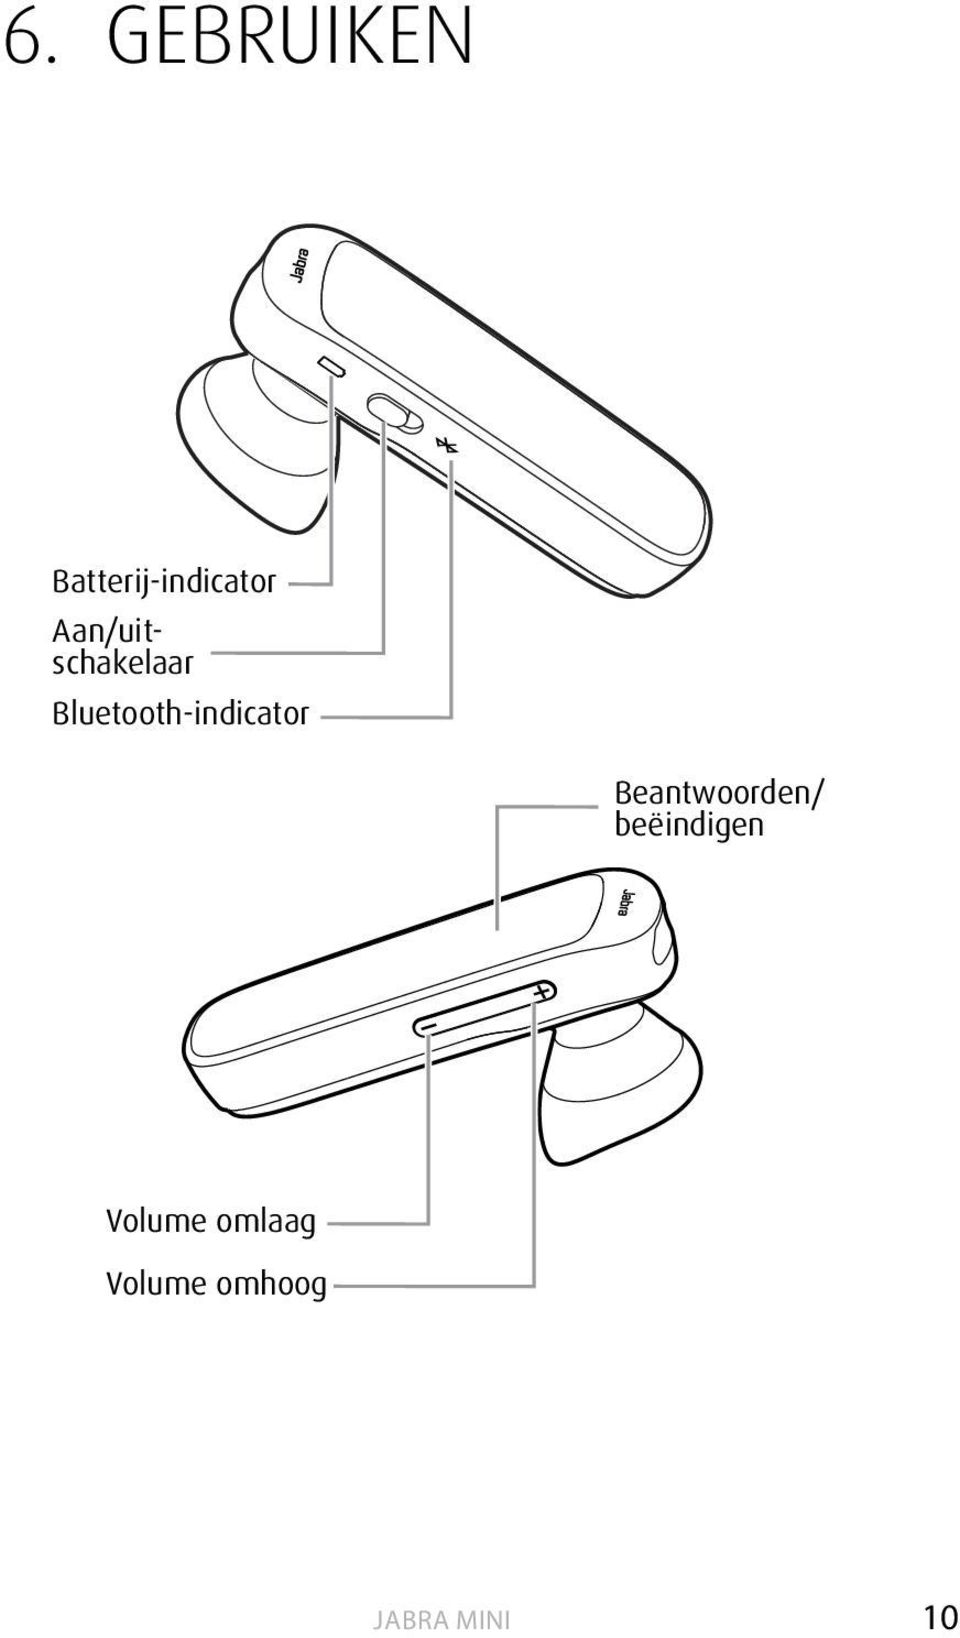 Bluetooth-indicator